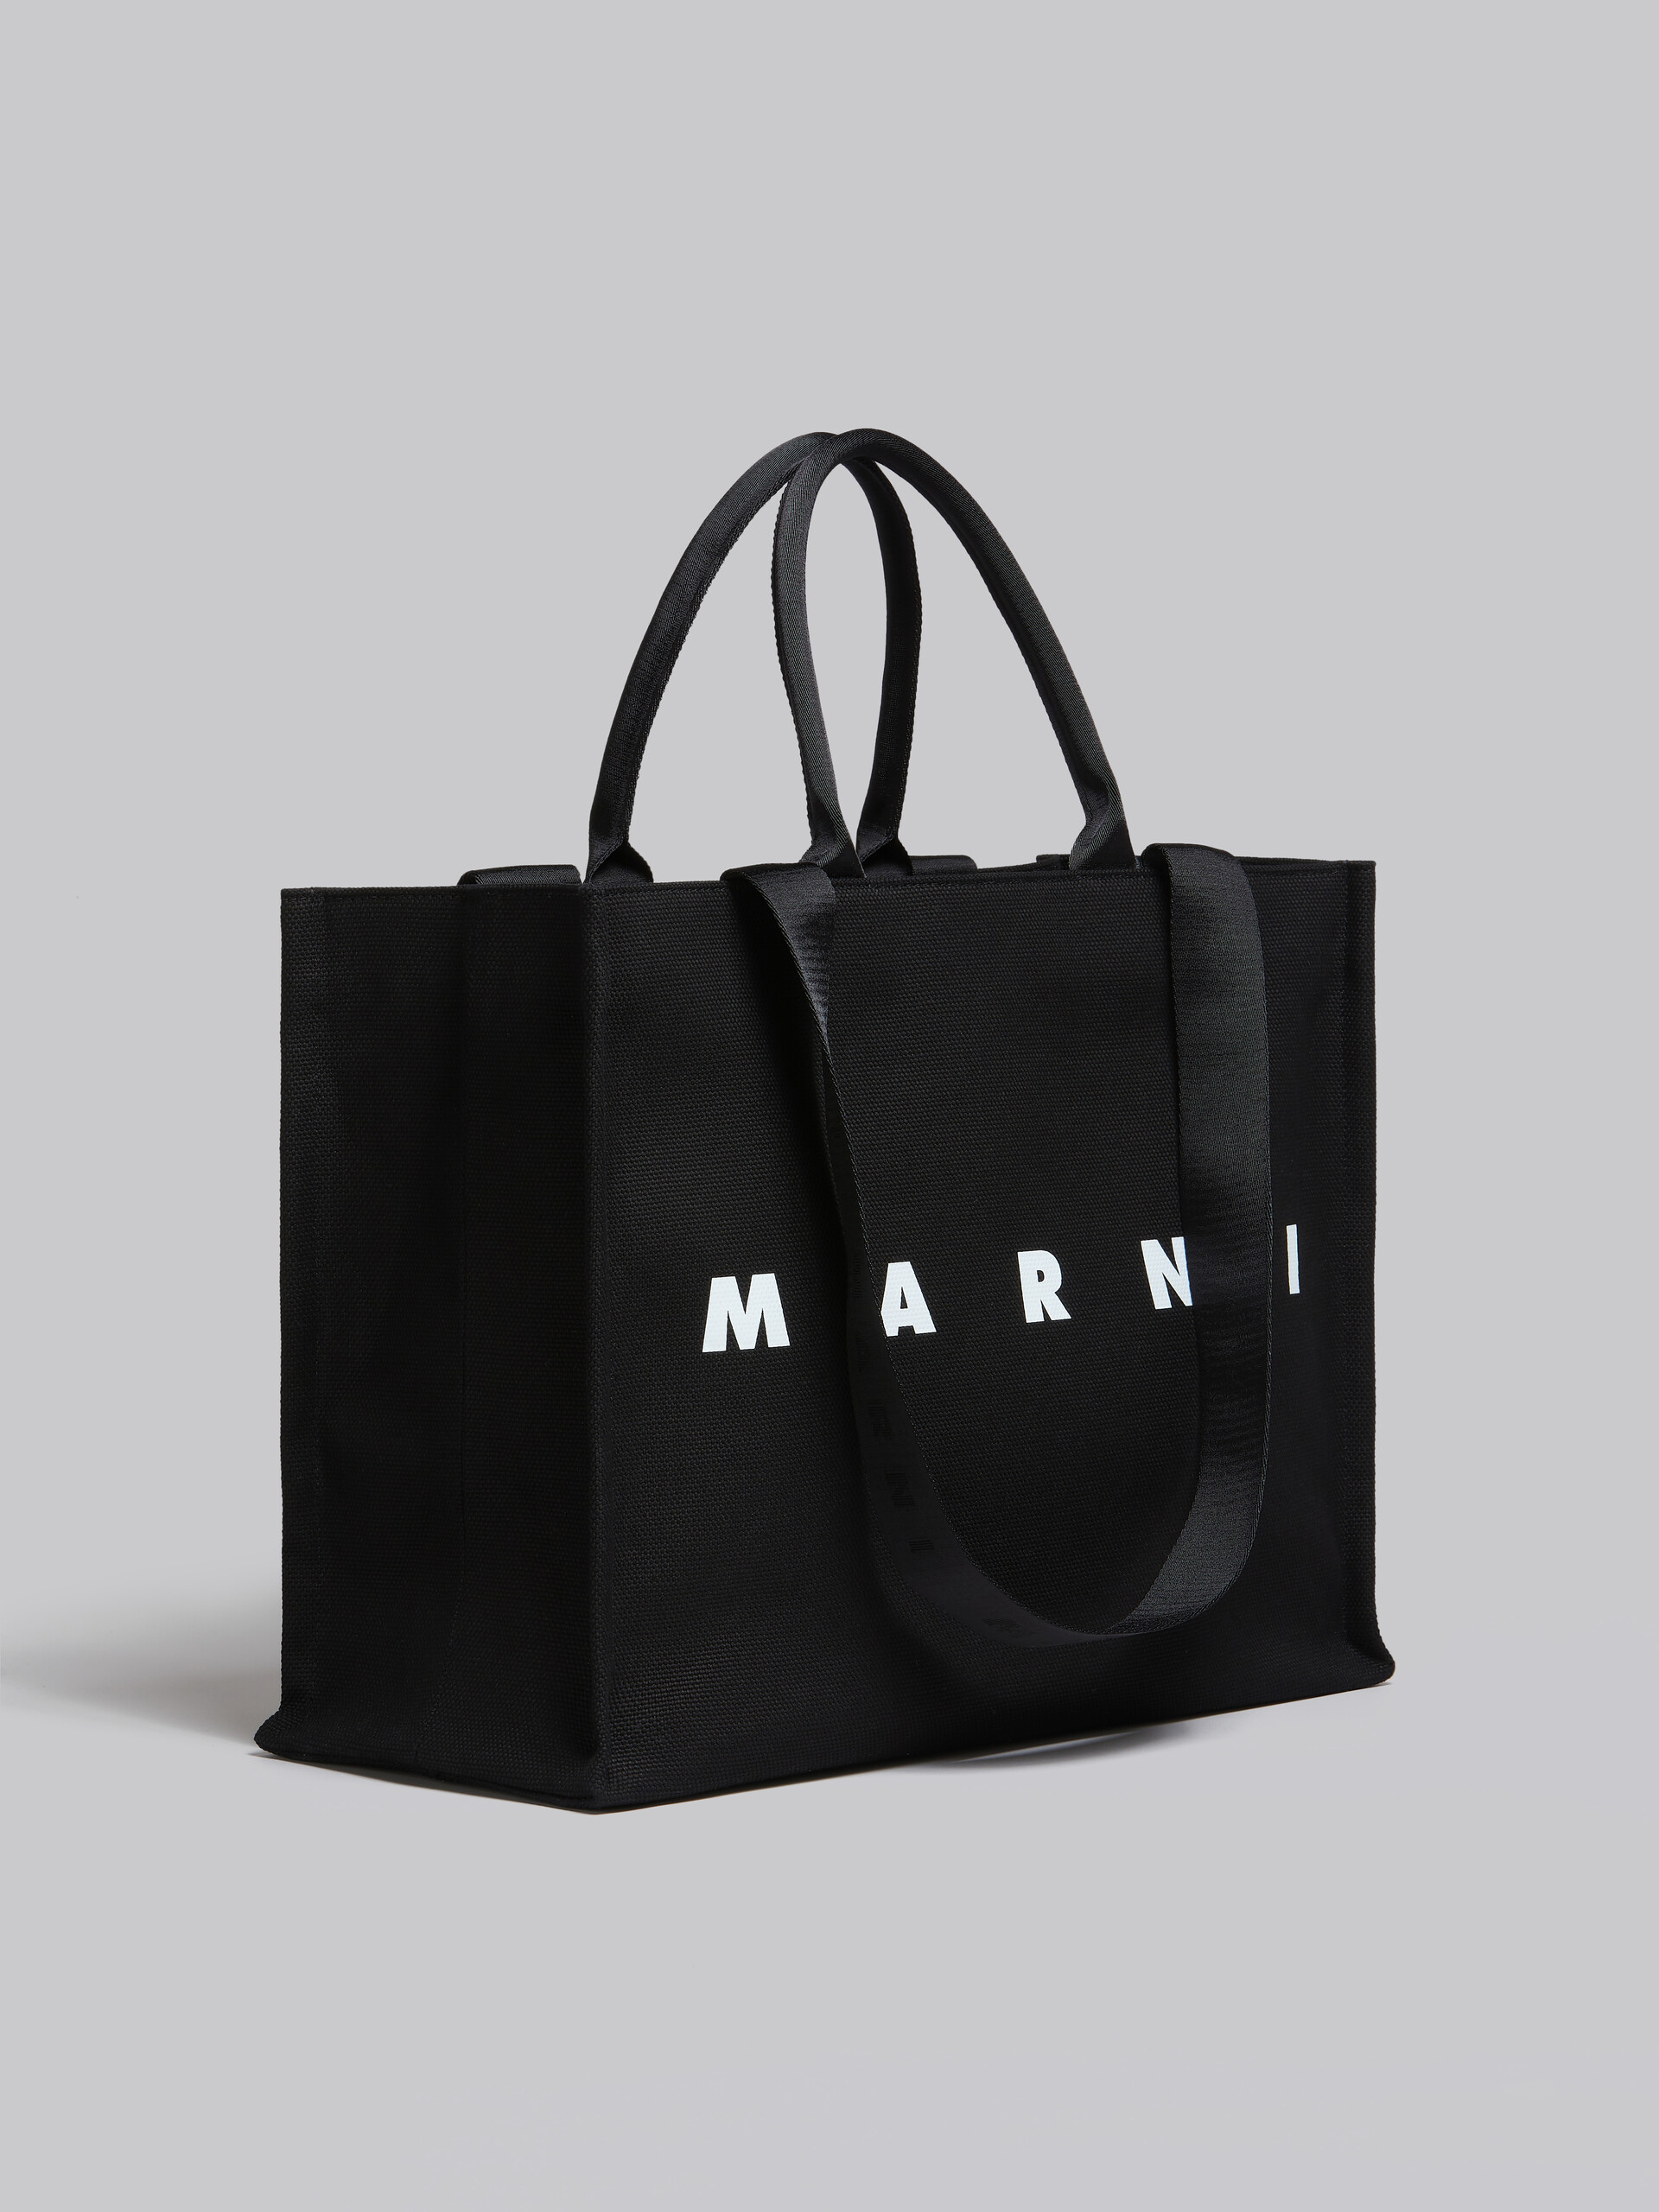 MARNI マルニ トートバッグ約460g保存袋¥97900